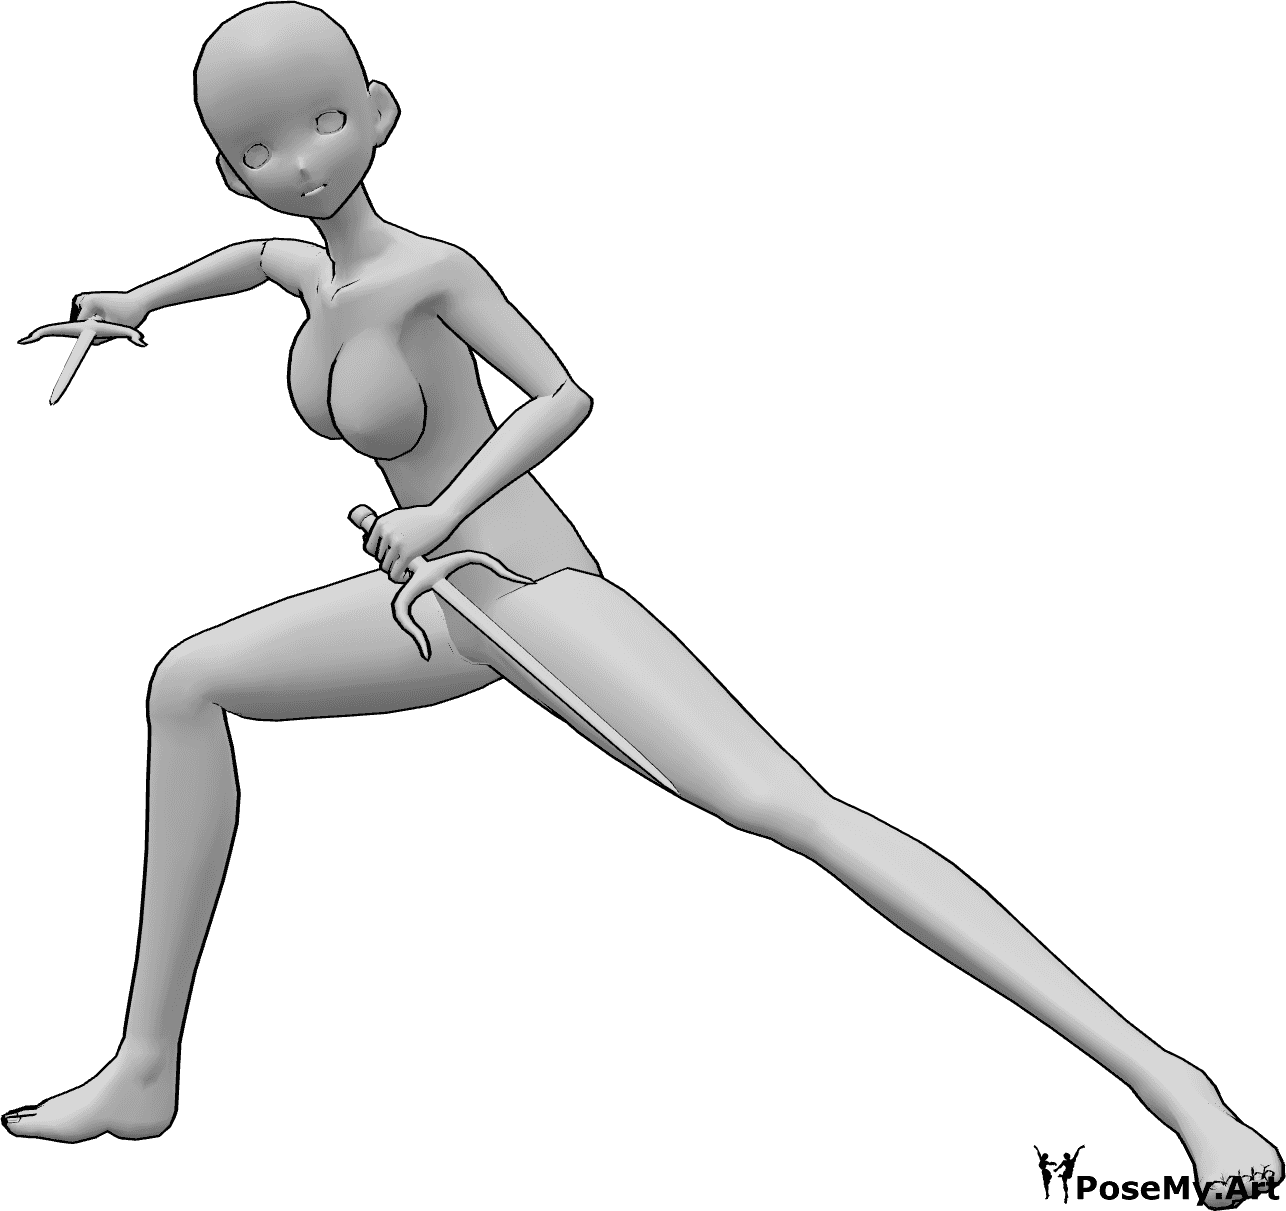 Référence des poses- Anime prenant la pose sai - Une femme animée tient des sais à deux mains et regarde vers l'avant, prête à se battre.